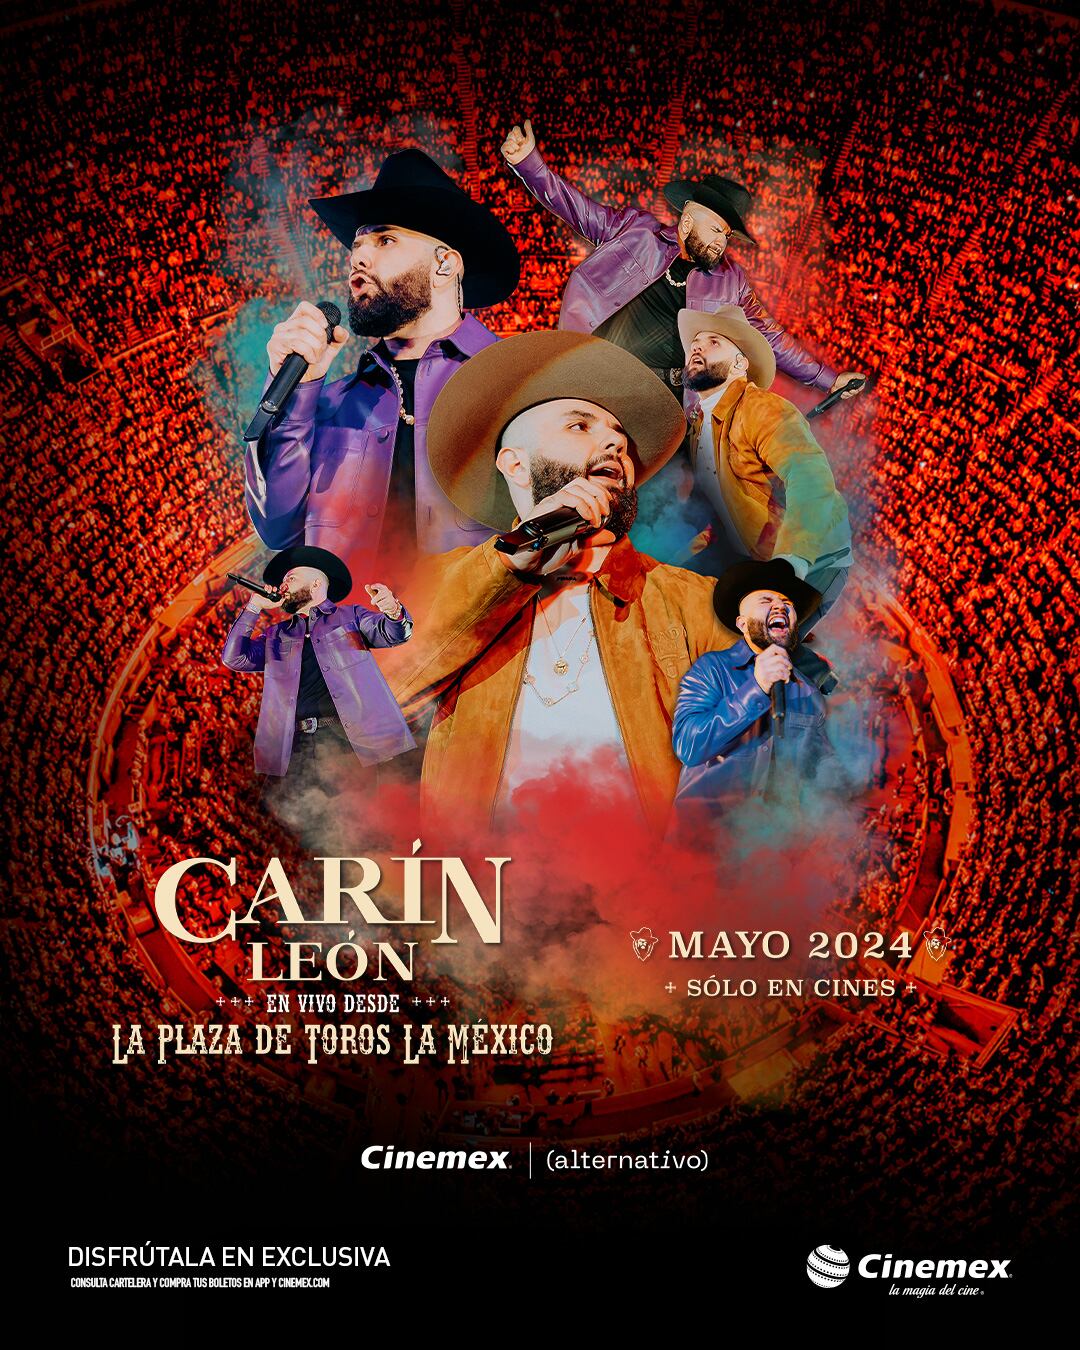 Carin León desde la Plaza de Toros ya tiene fecha de estreno en Cinemex